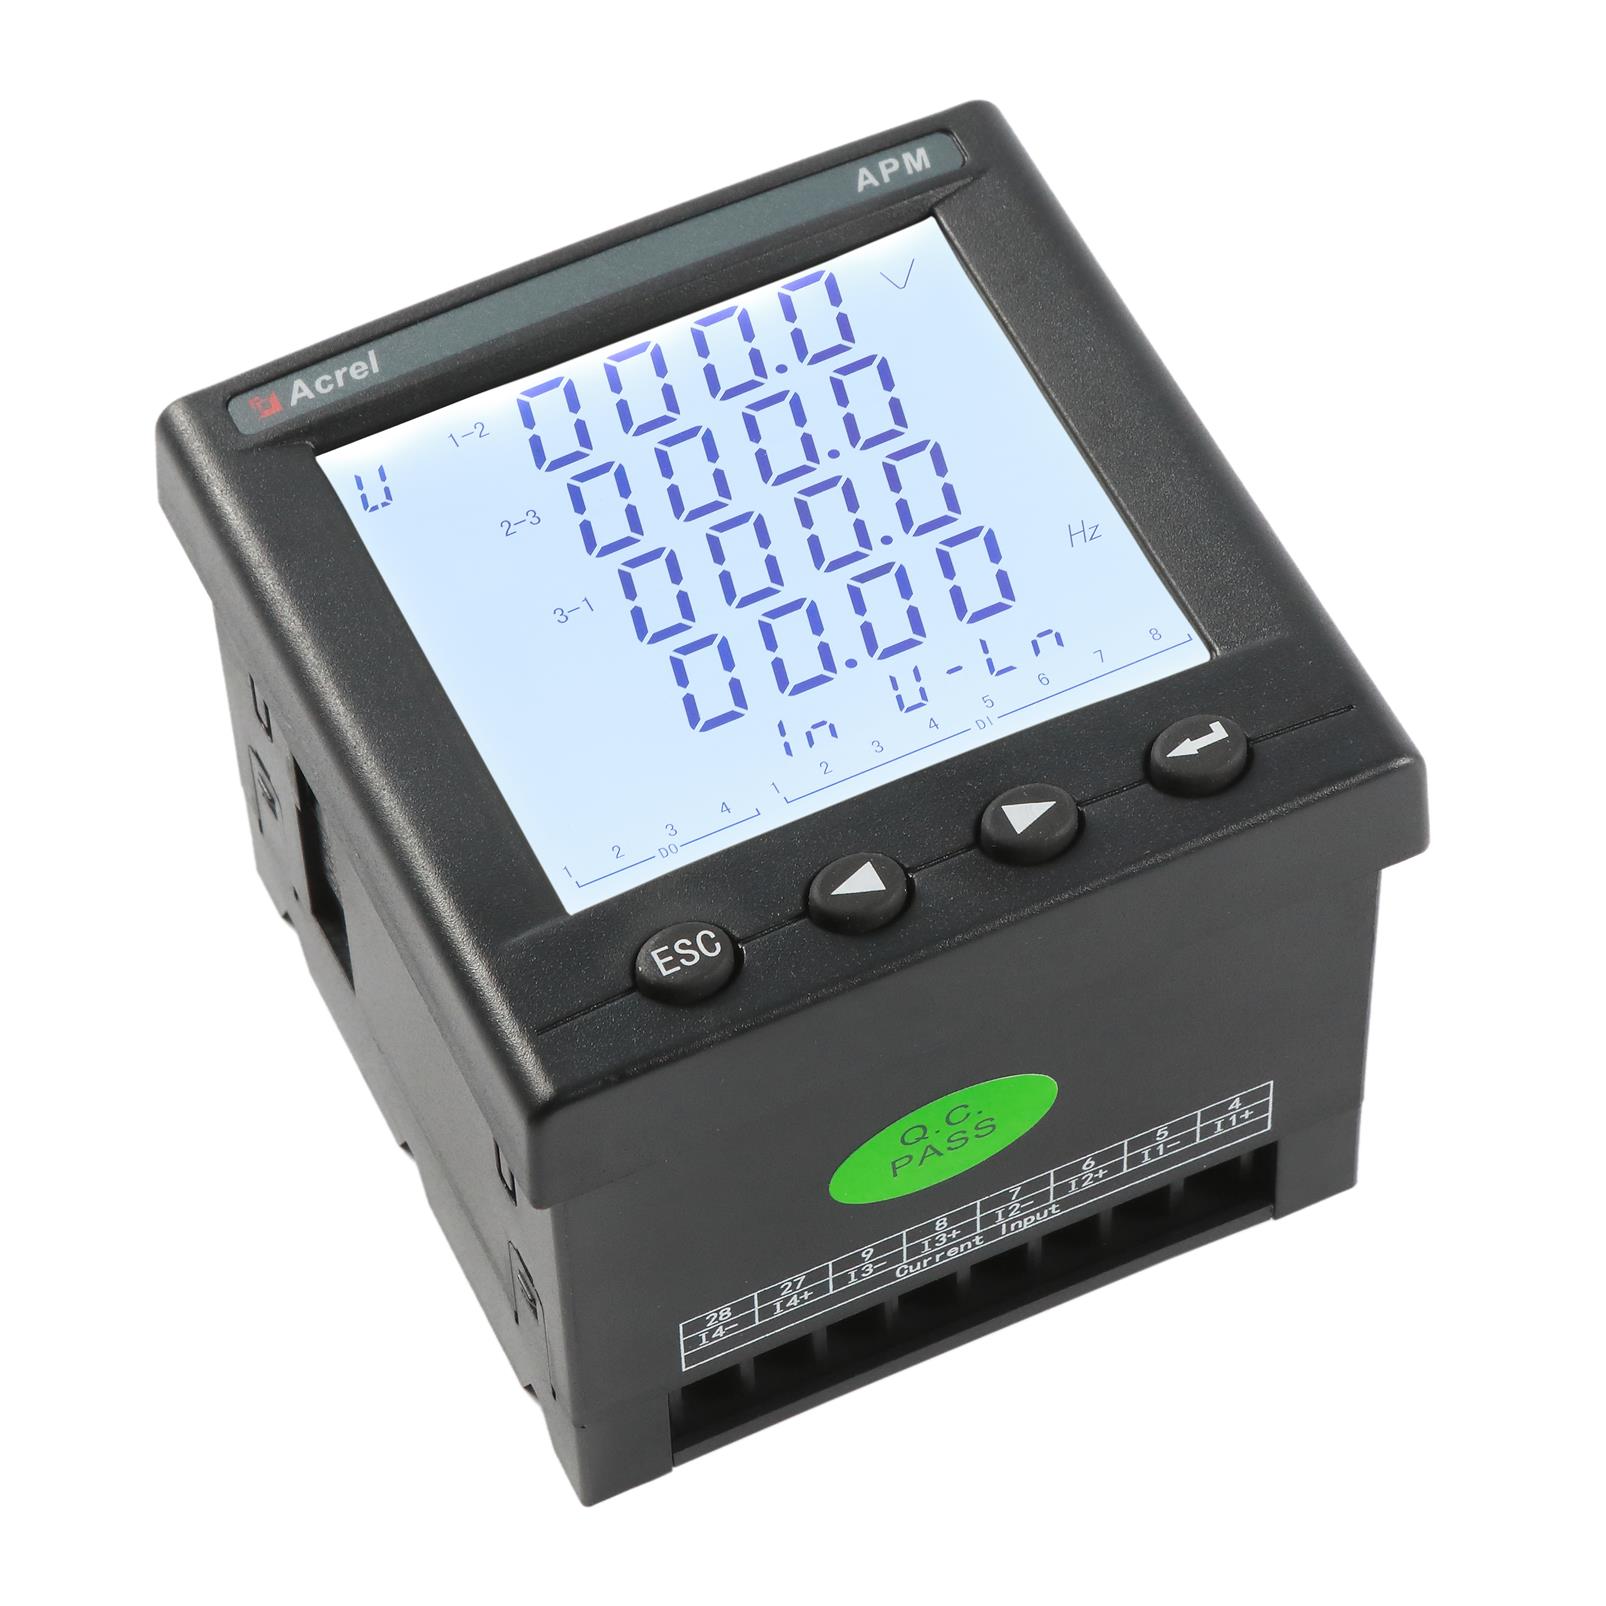 安科瑞APM810/MLOG自带SD卡存储事件记录报警记录功能智能电能表